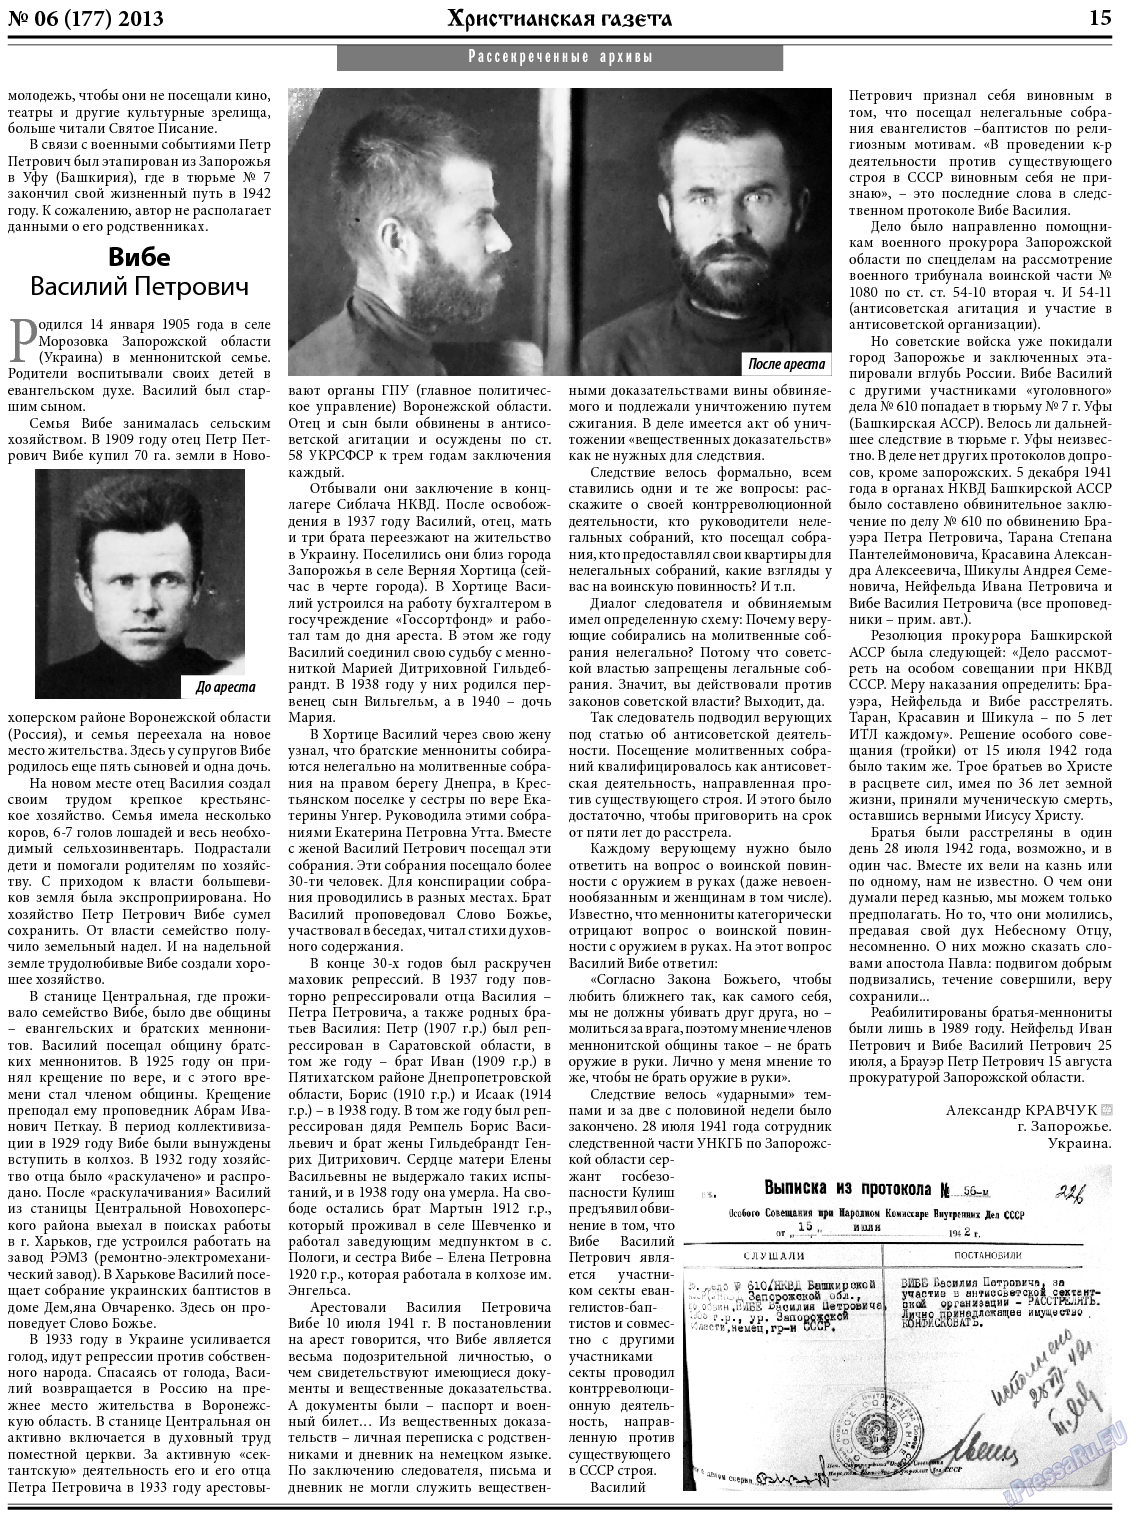 Христианская газета, газета. 2013 №6 стр.23